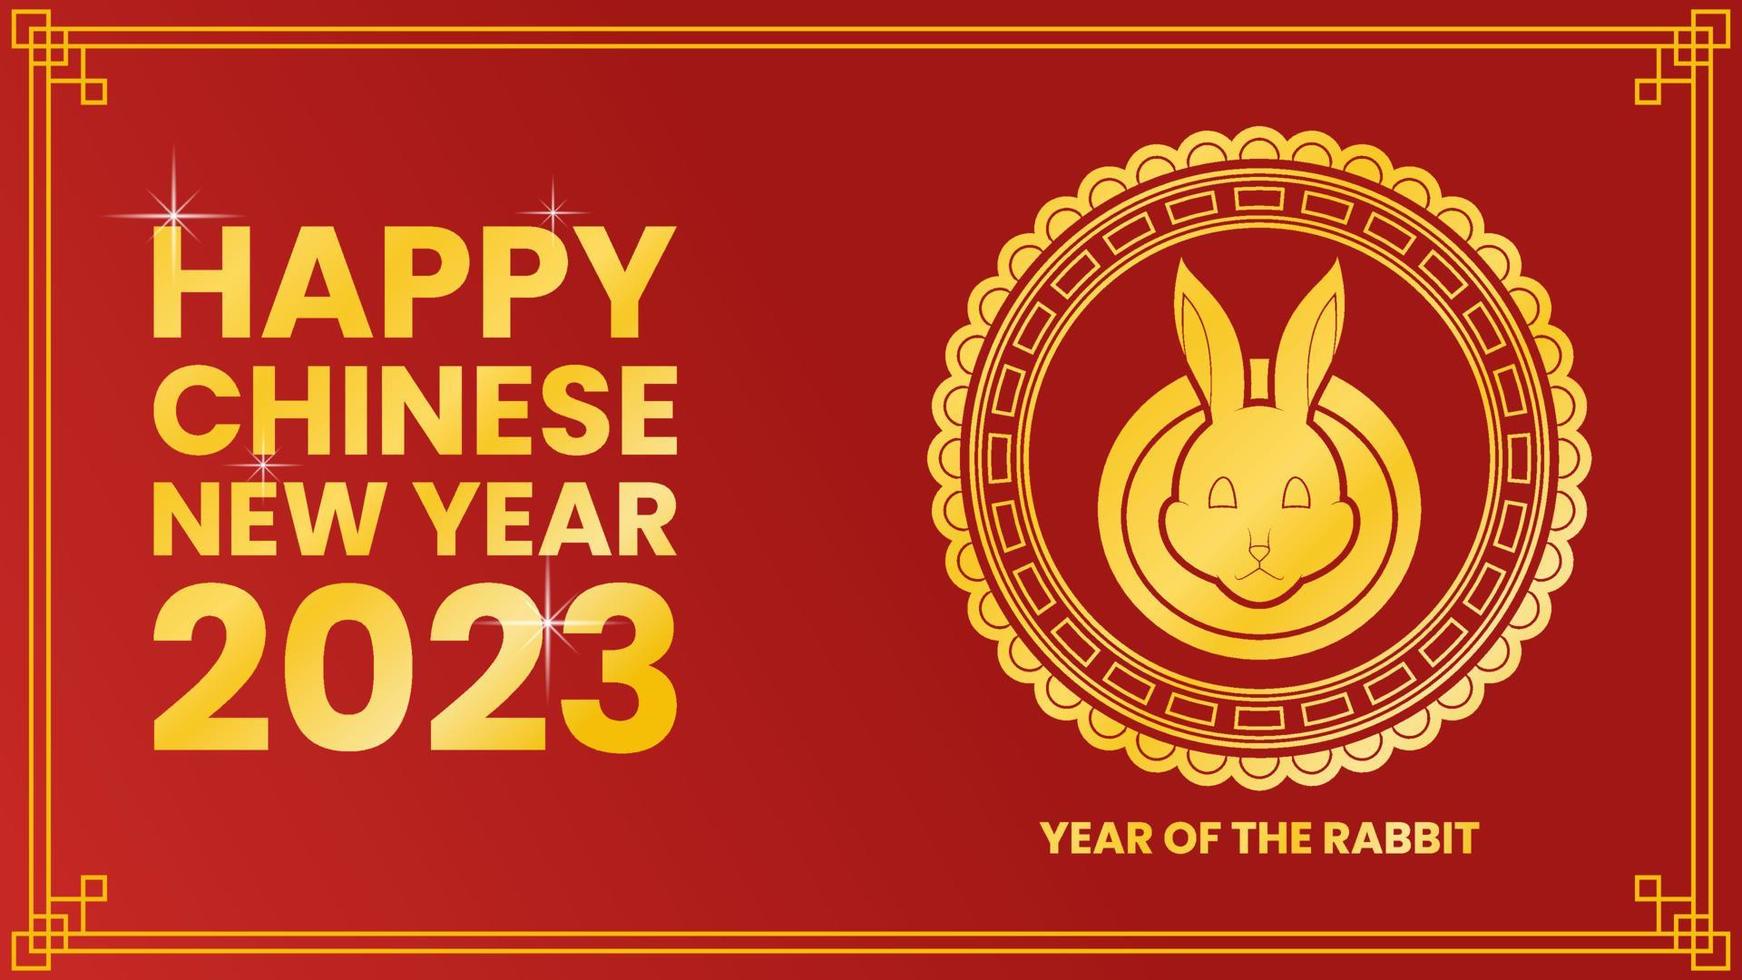 conception de voeux pour le nouvel an chinois 2023 avec lapin, ornement et fond rouge. utilisé pour une affiche ou une bannière vecteur